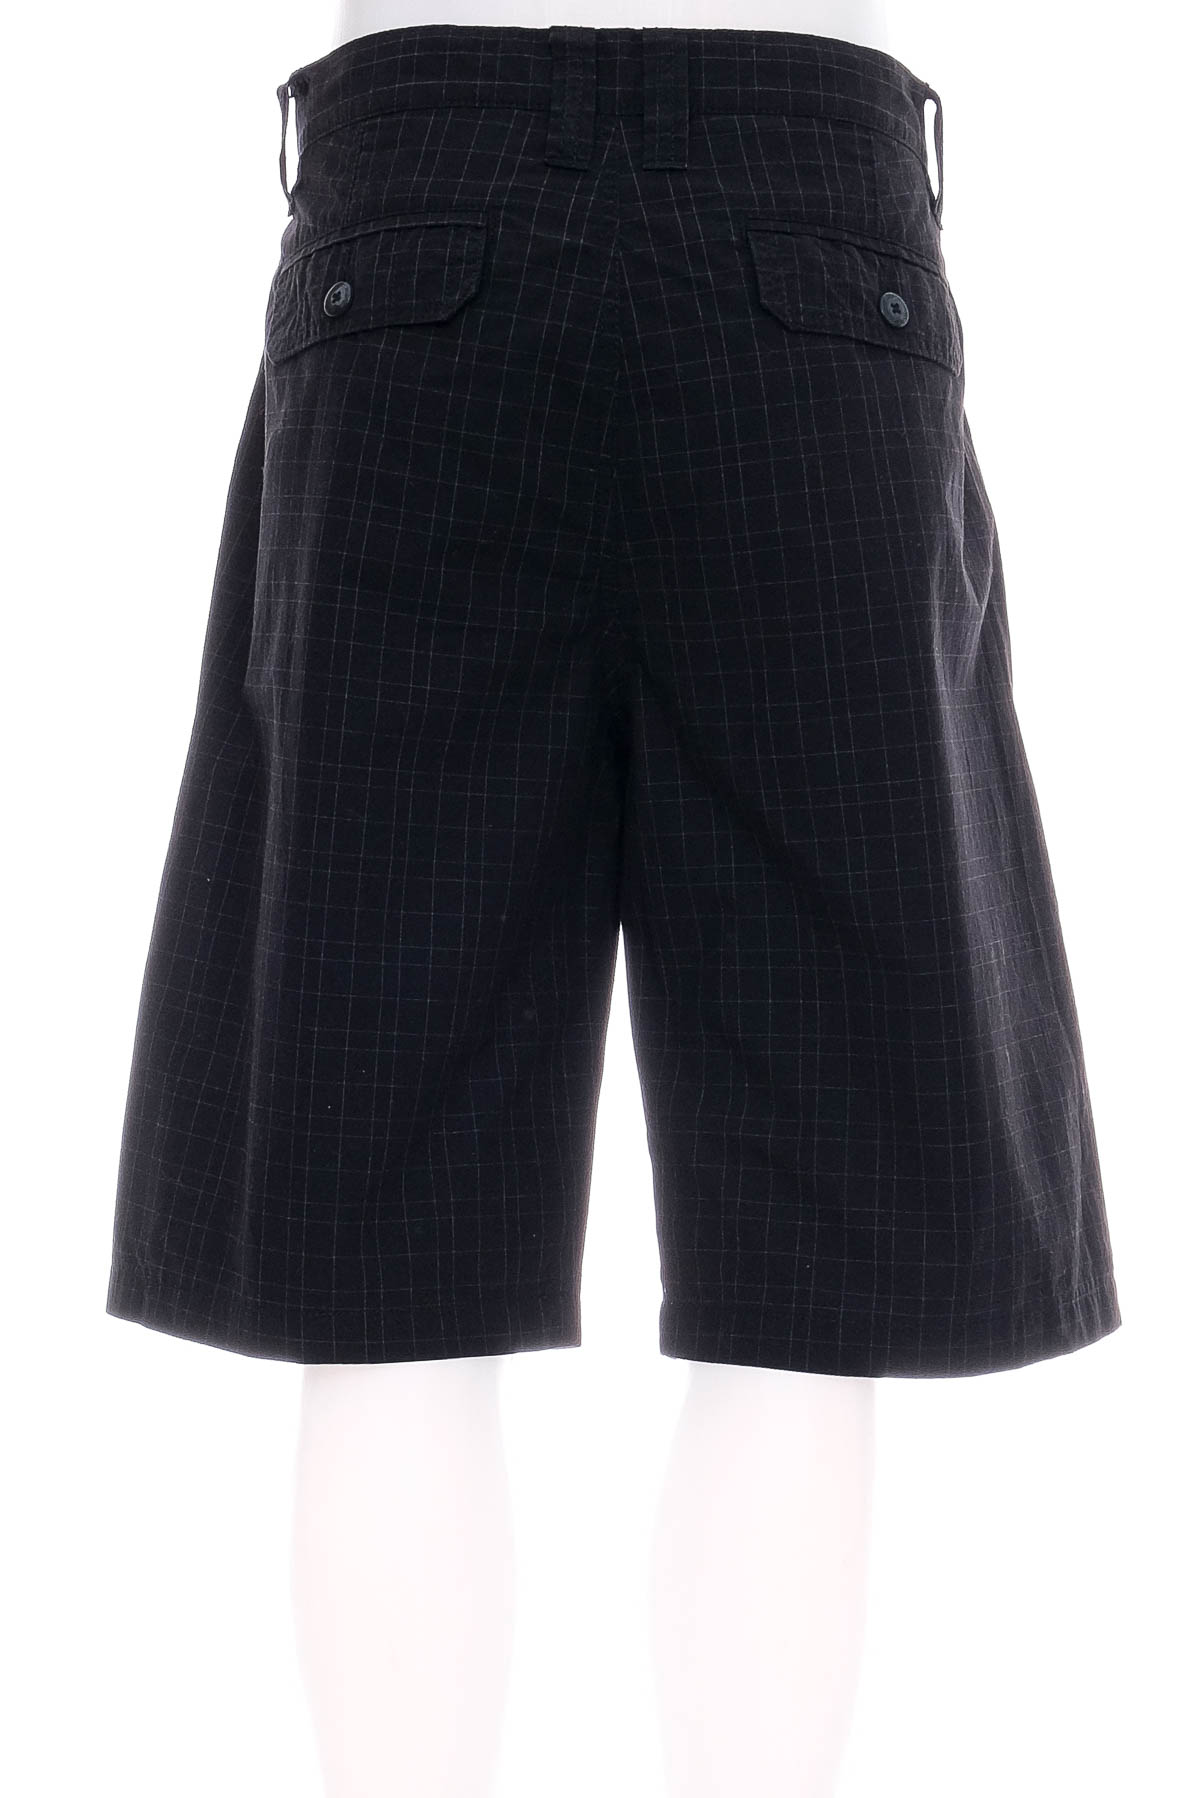 Men's shorts - JEANSWEST - 1